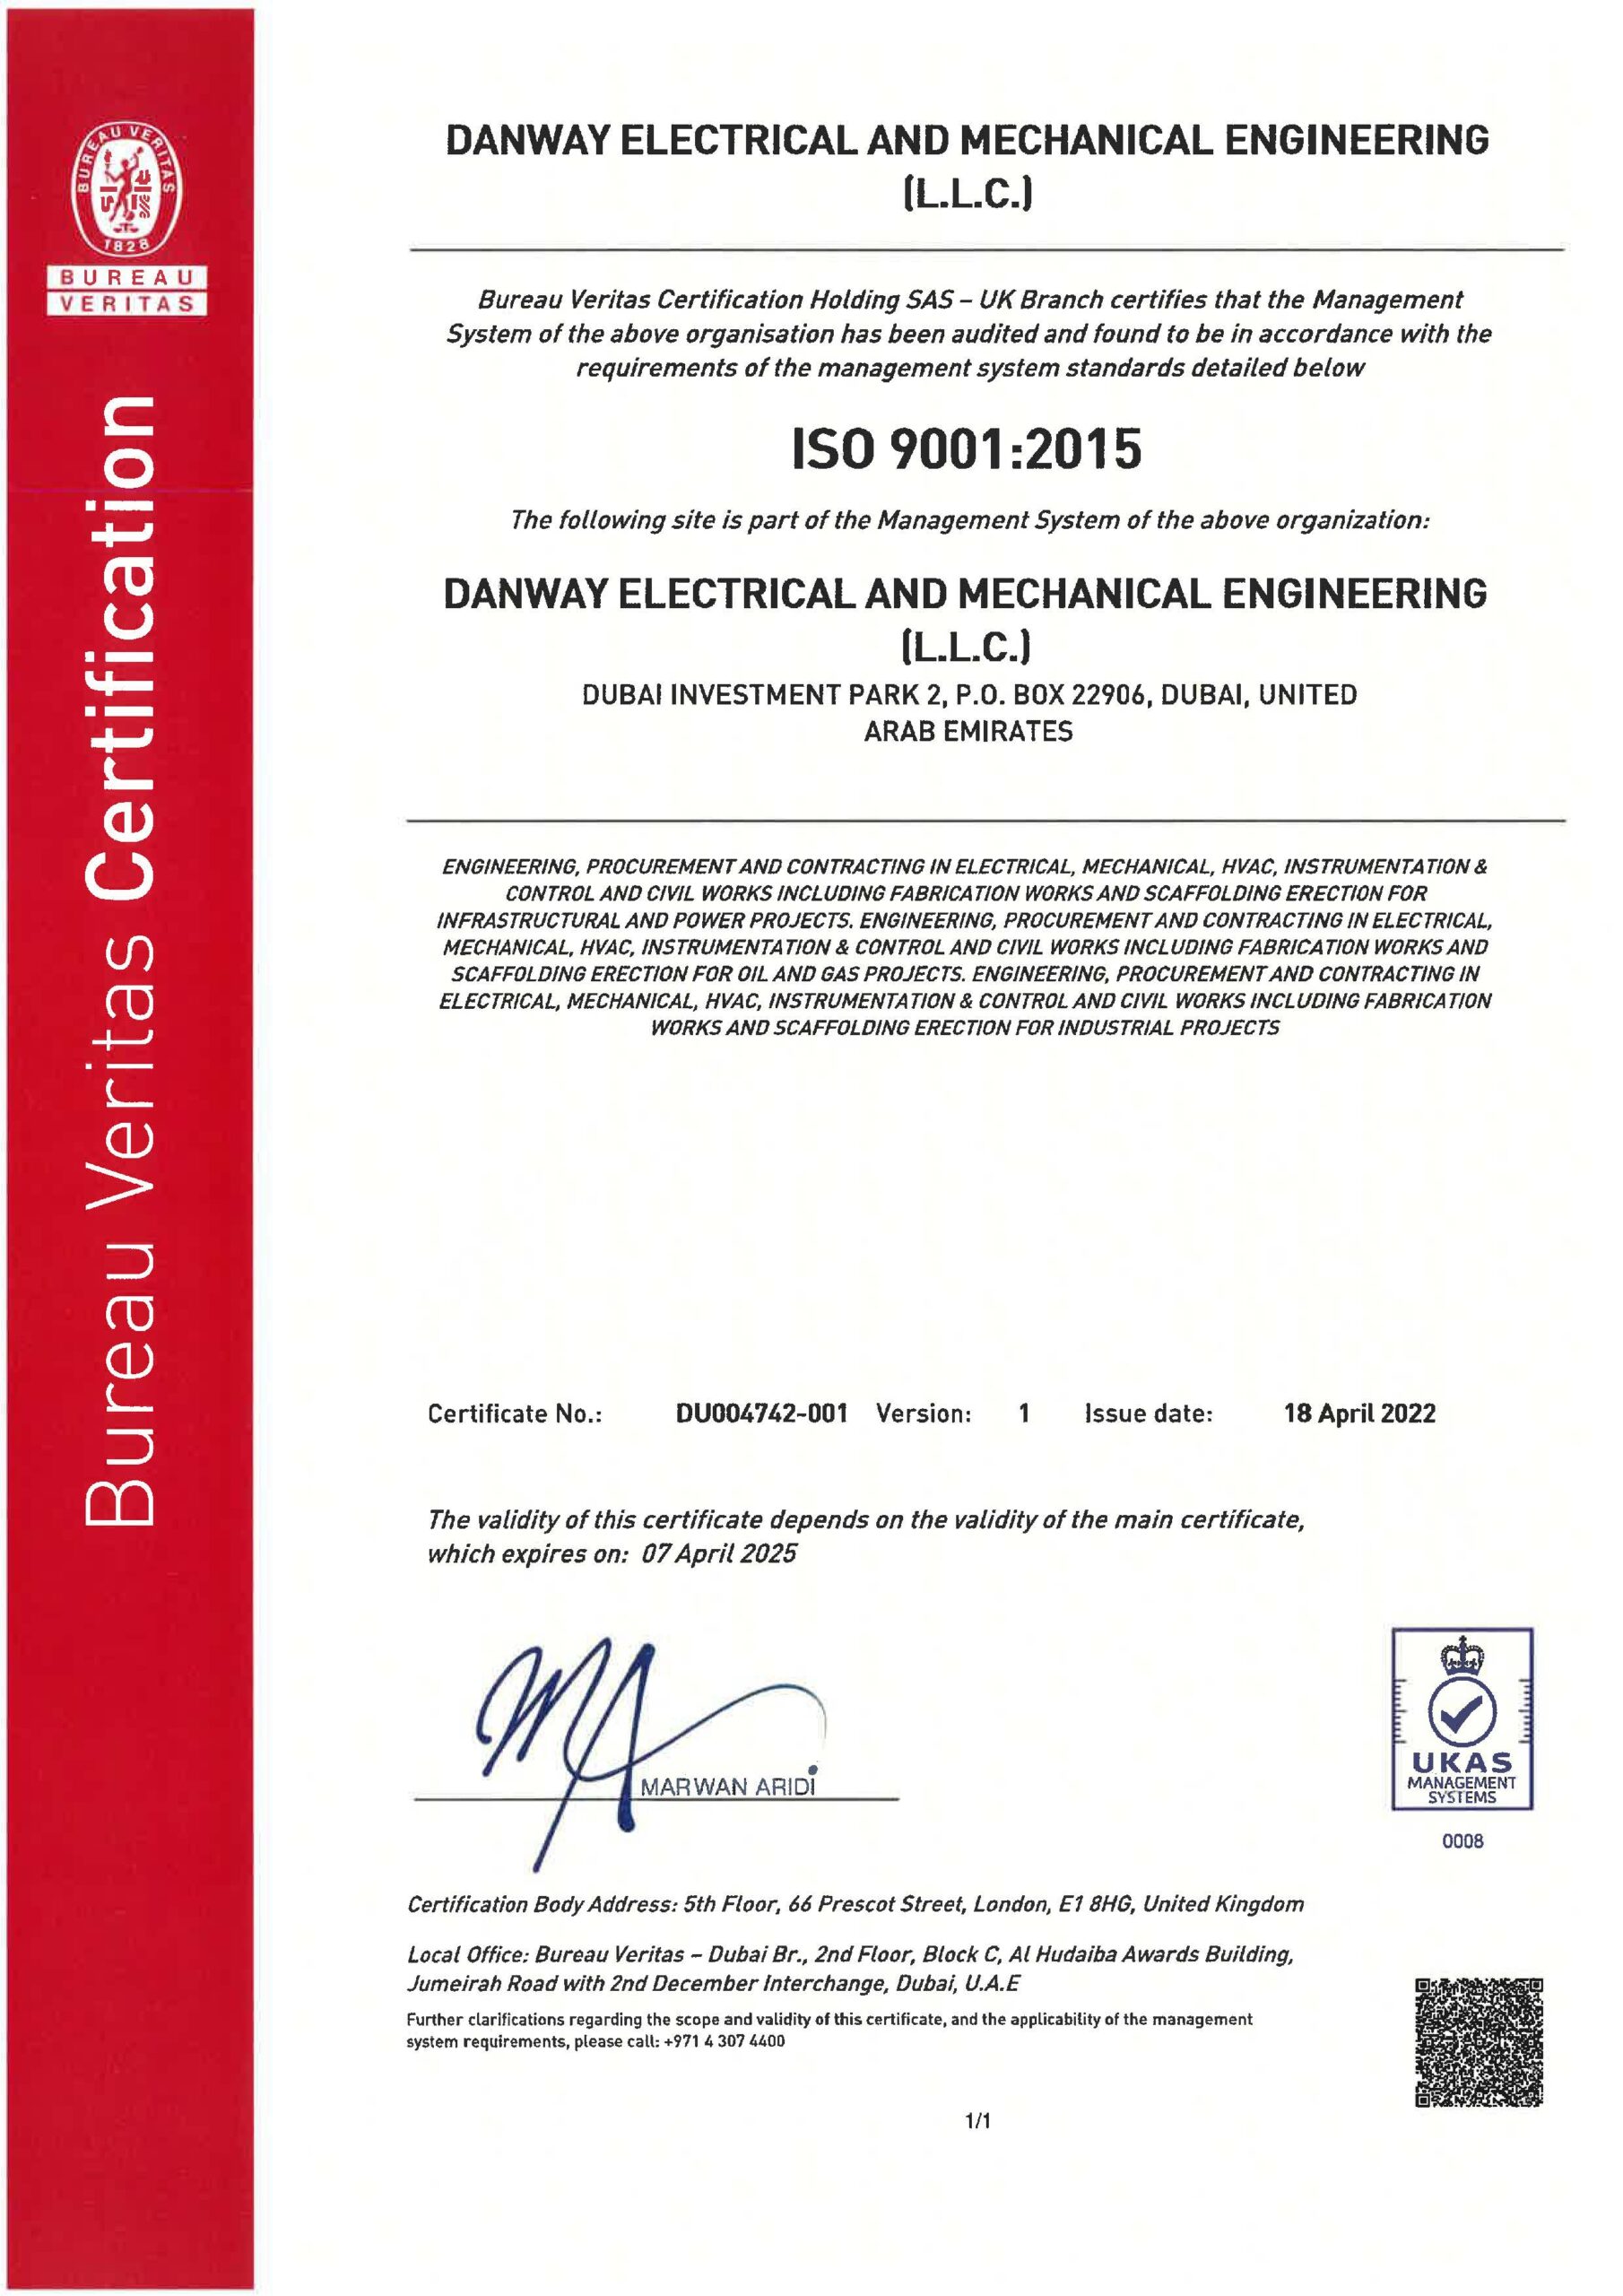 ISO9001:2015 Danway EME, Dubai